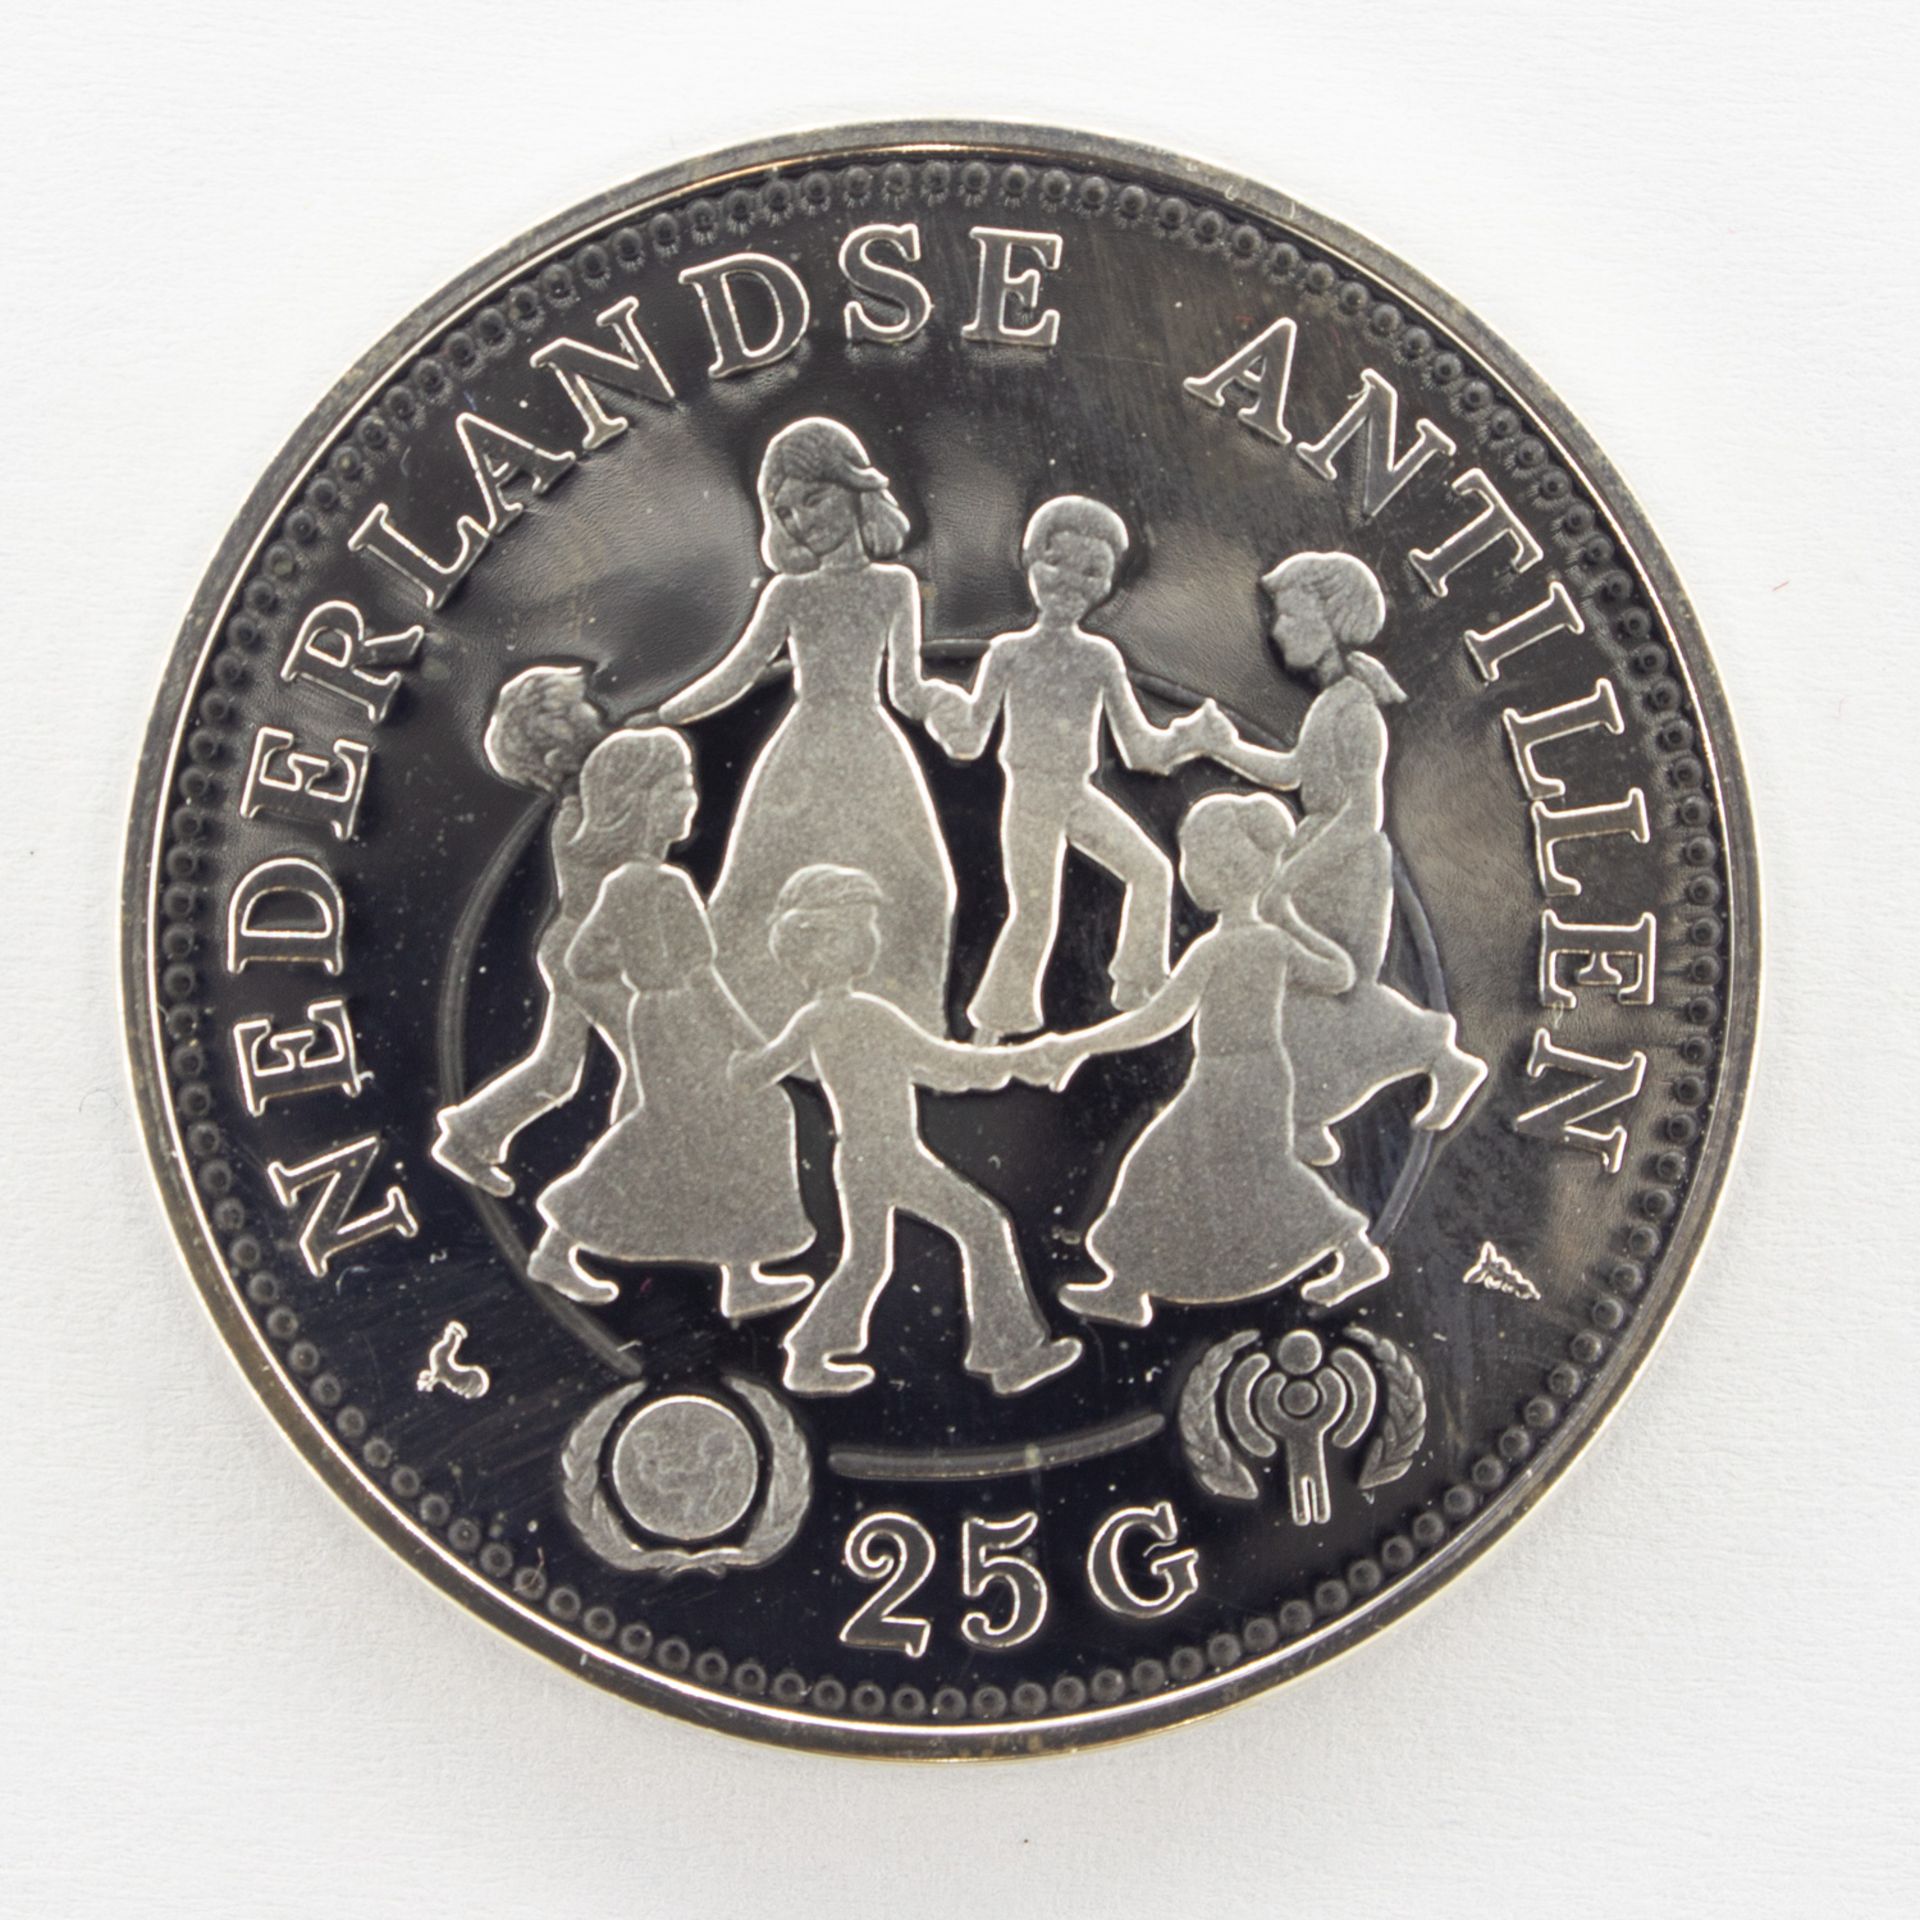 25 Gulden - Image 2 of 2